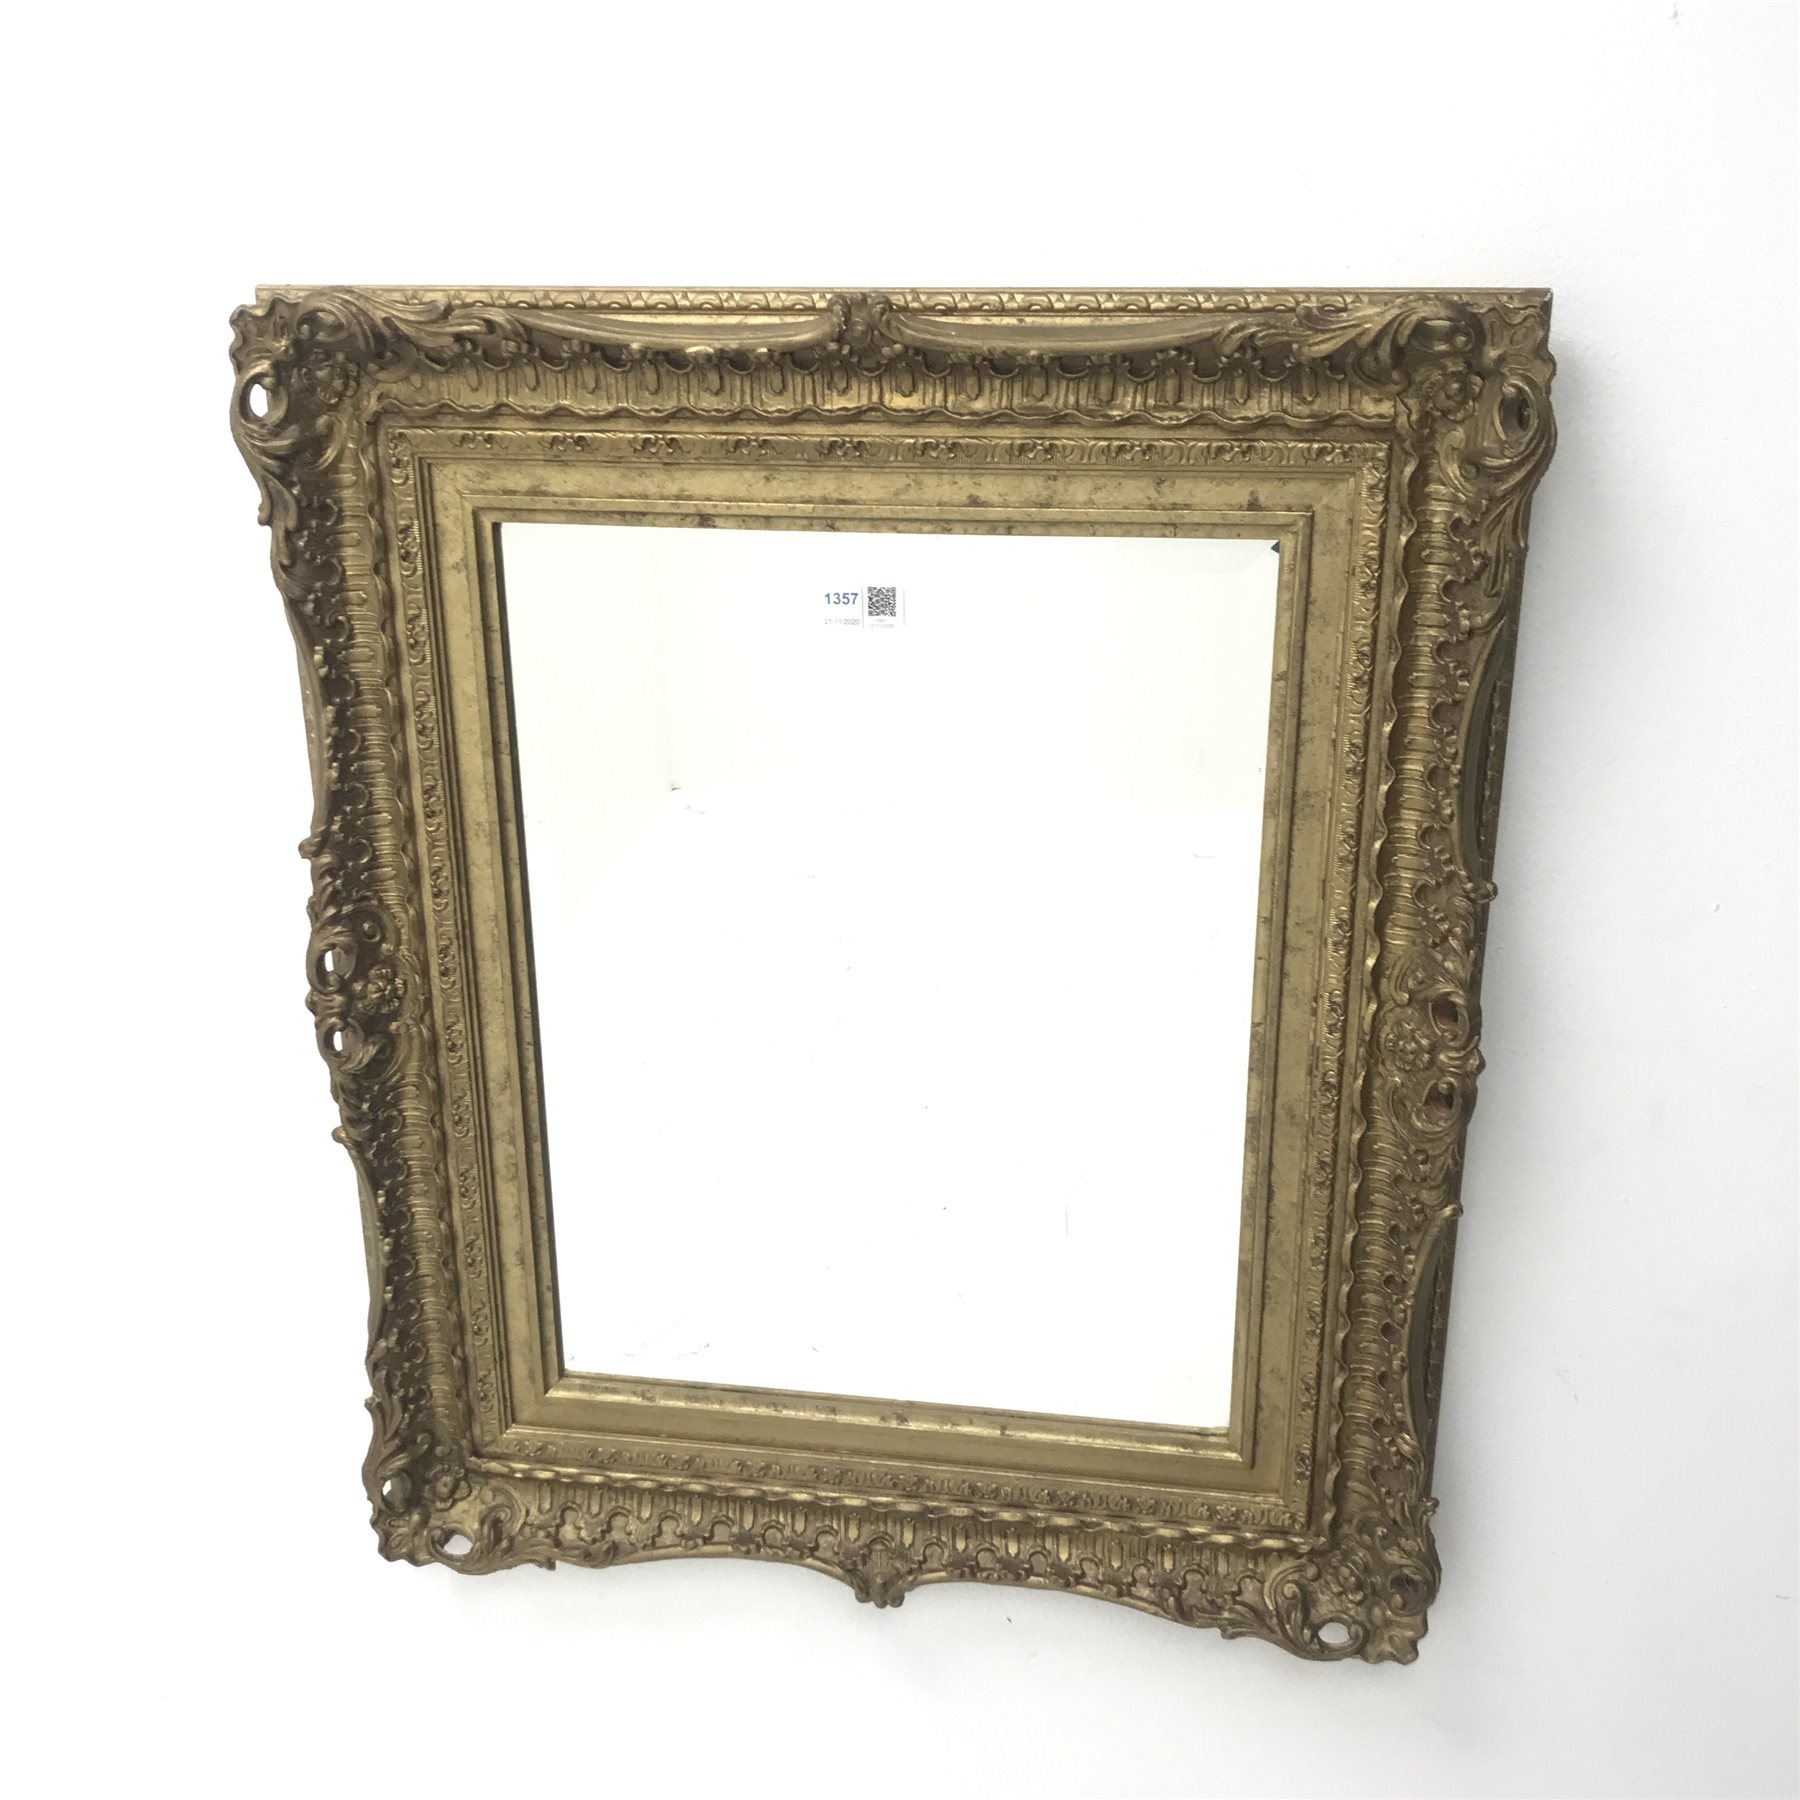 Swept gilt framed bevel edge mirror, W54cm, H65cm - Image 2 of 6